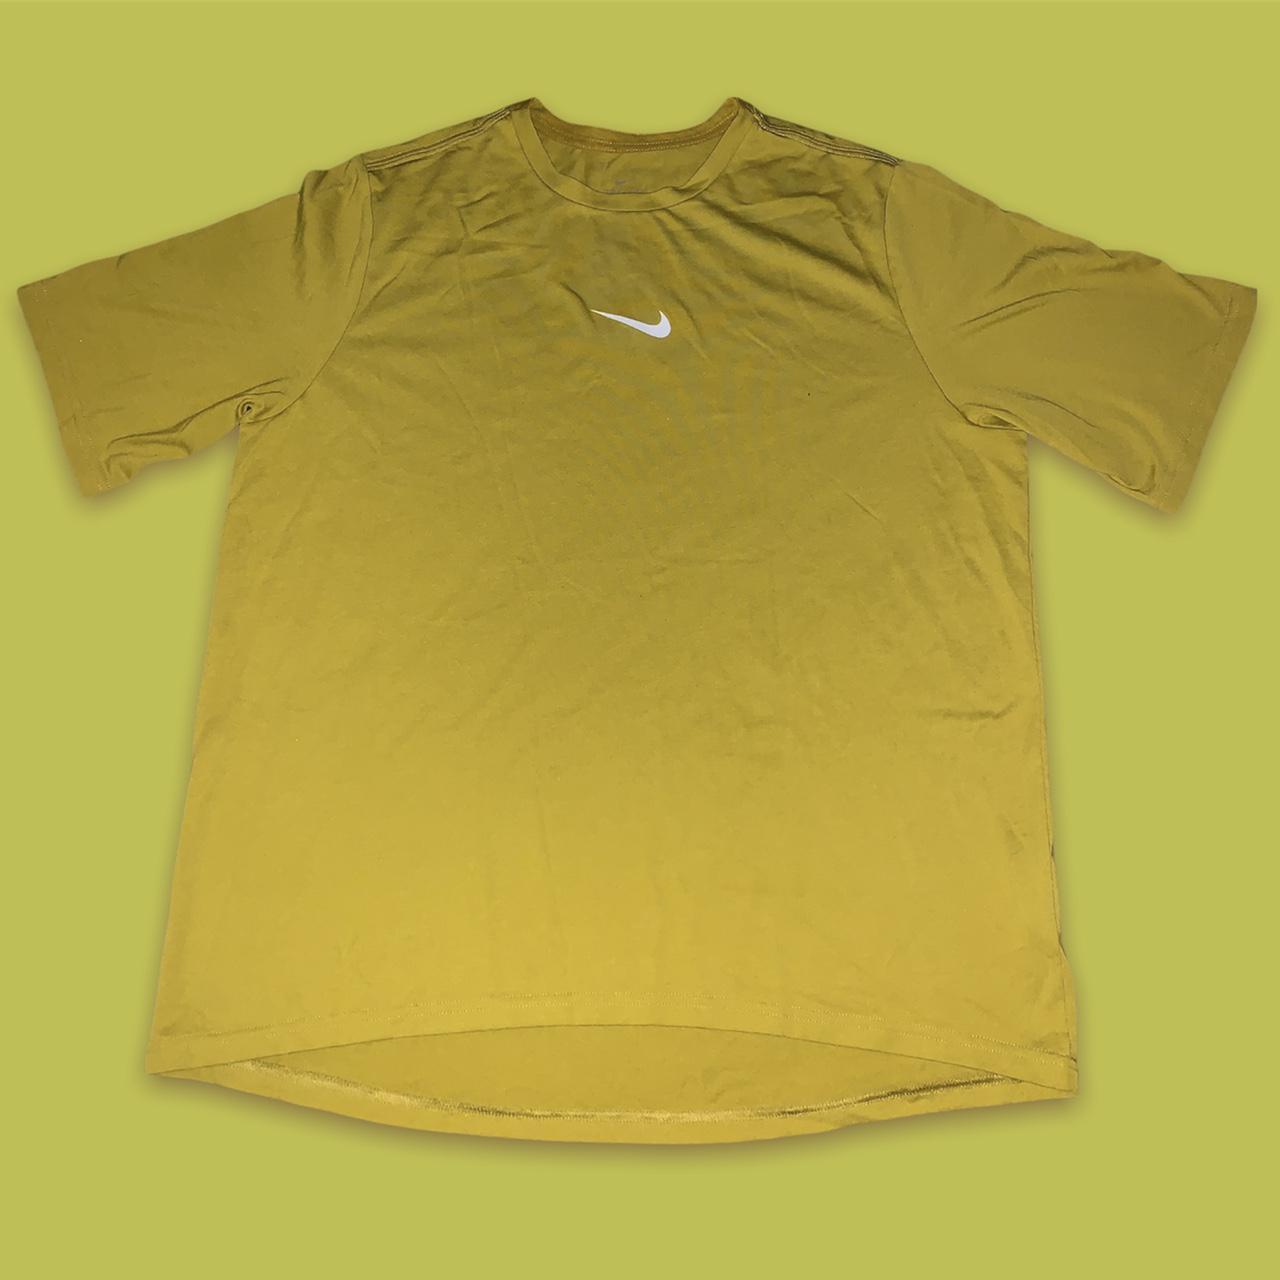 Product Image 1 - Nike Dri-Fit Training Shirt

• size